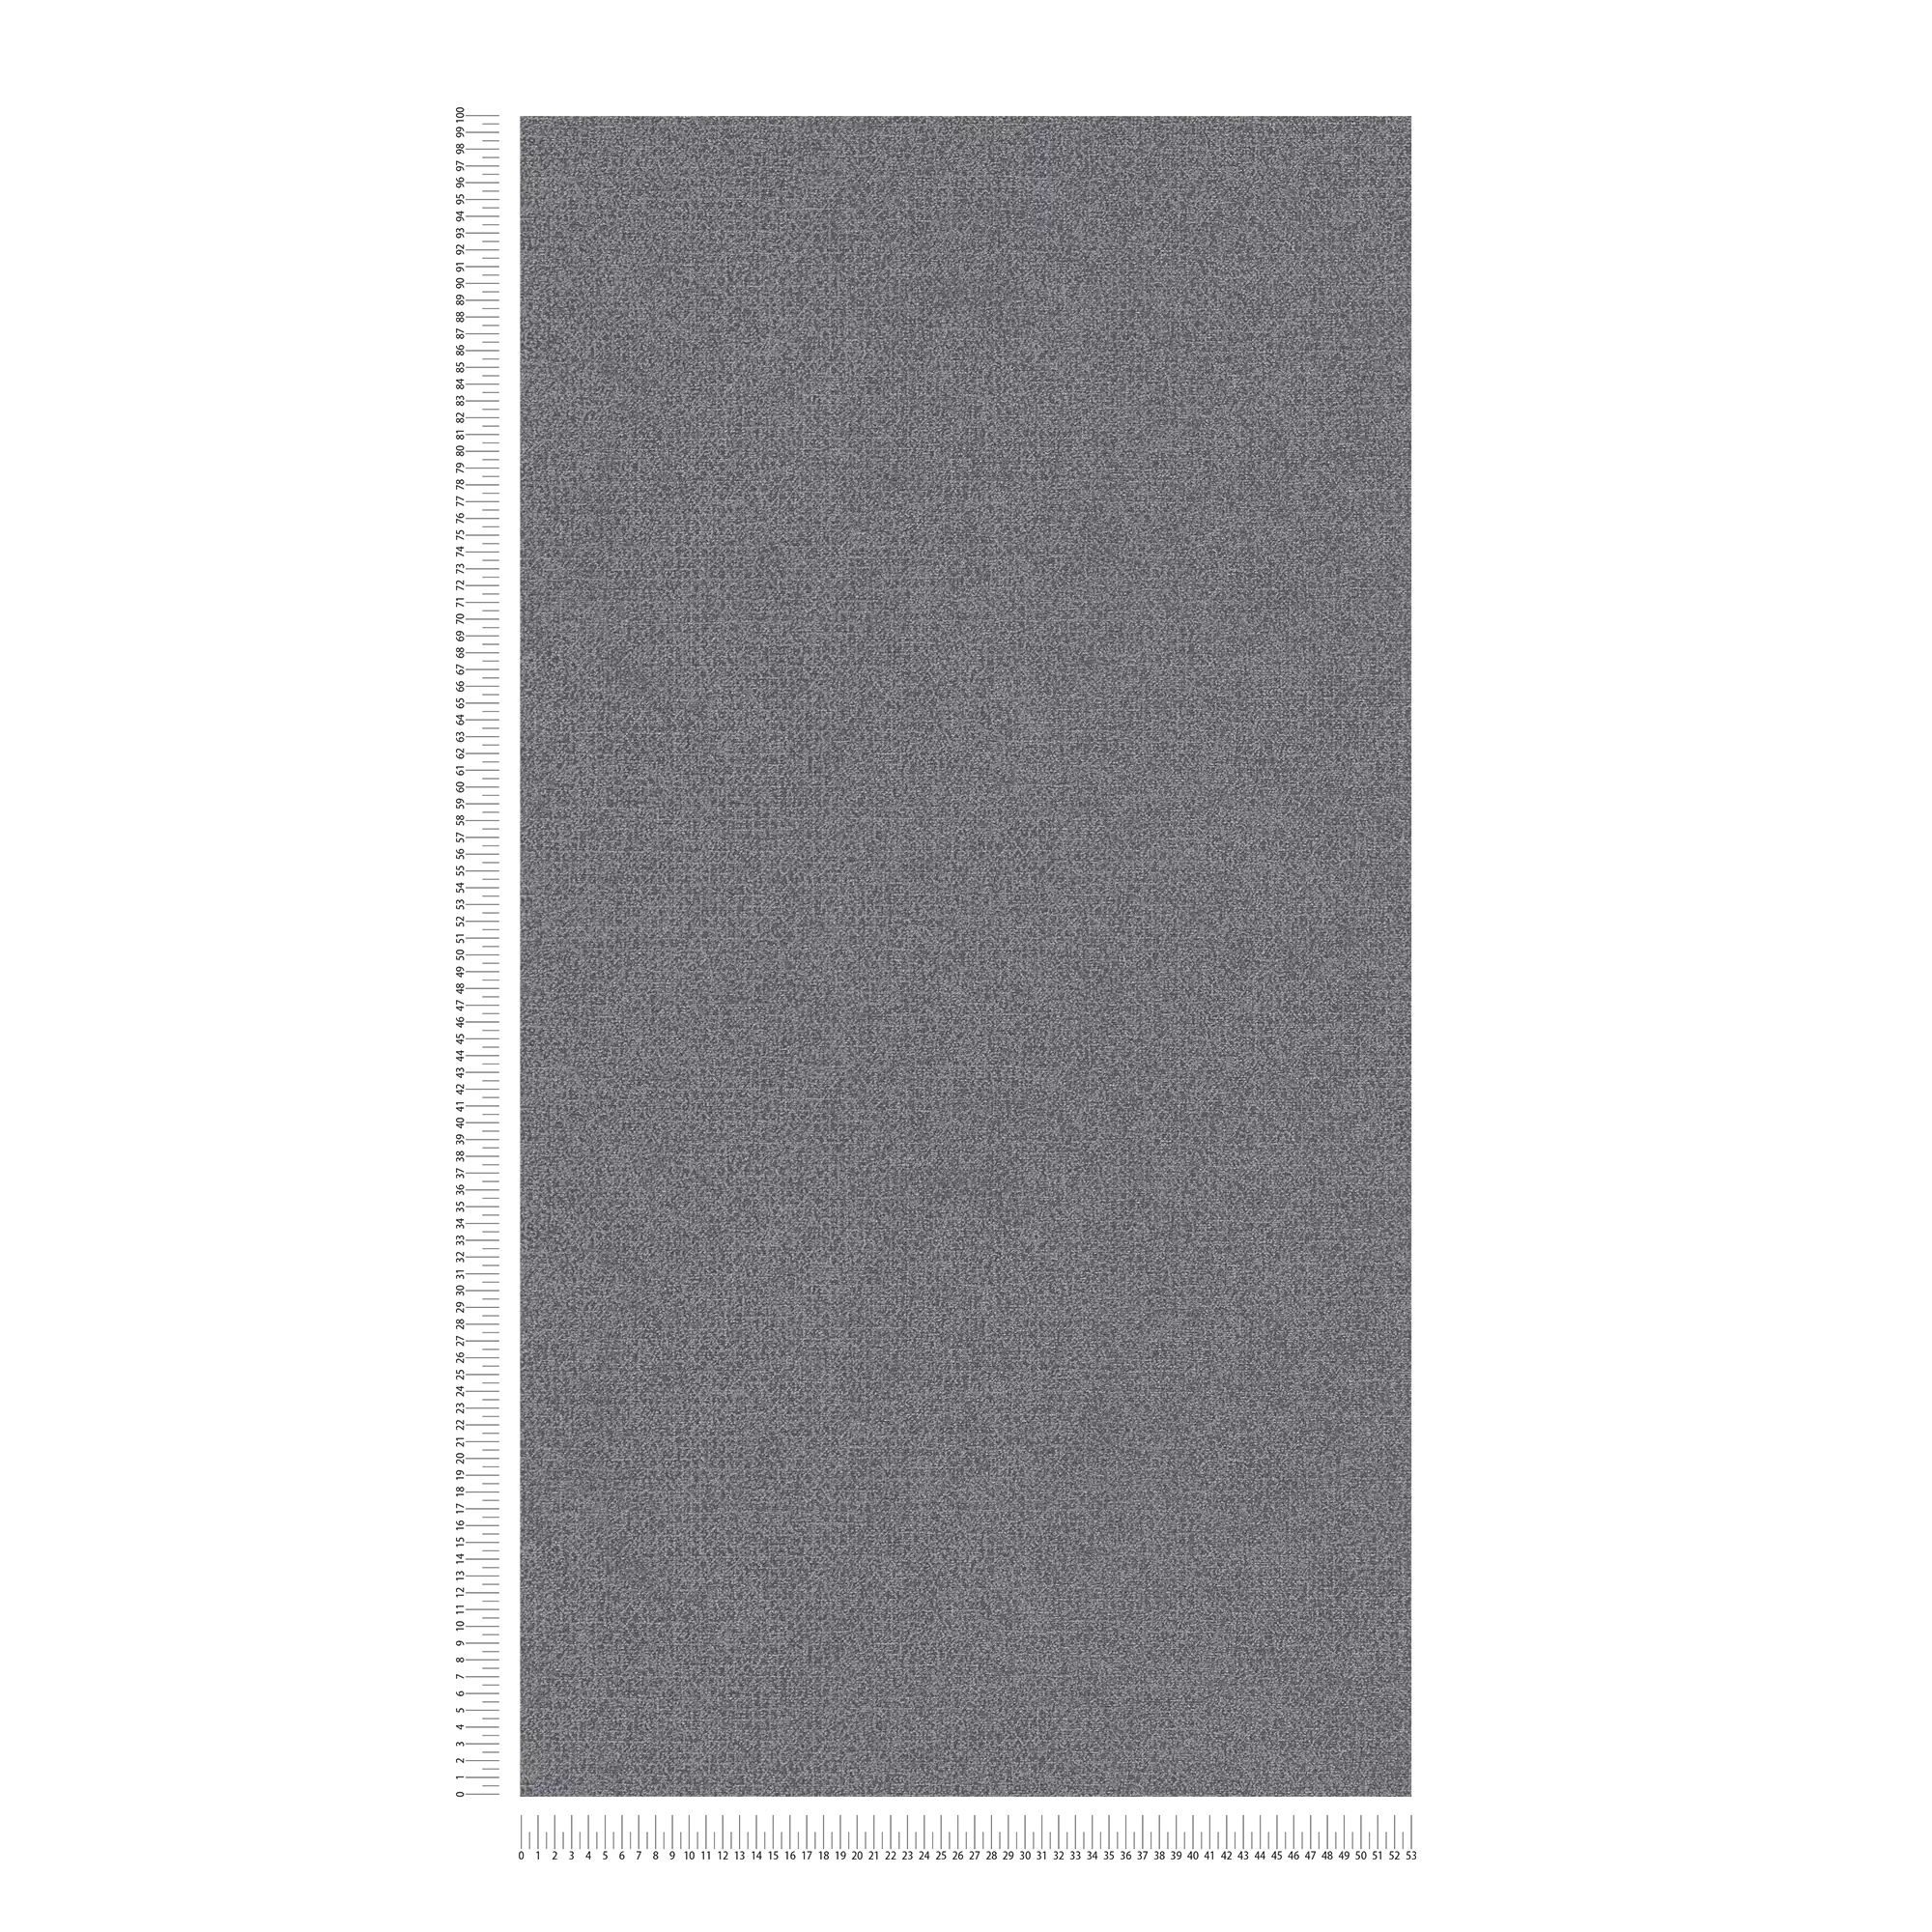             Carta da parati in tessuto non tessuto senza PVC con motivo lucido - nero, argento
        